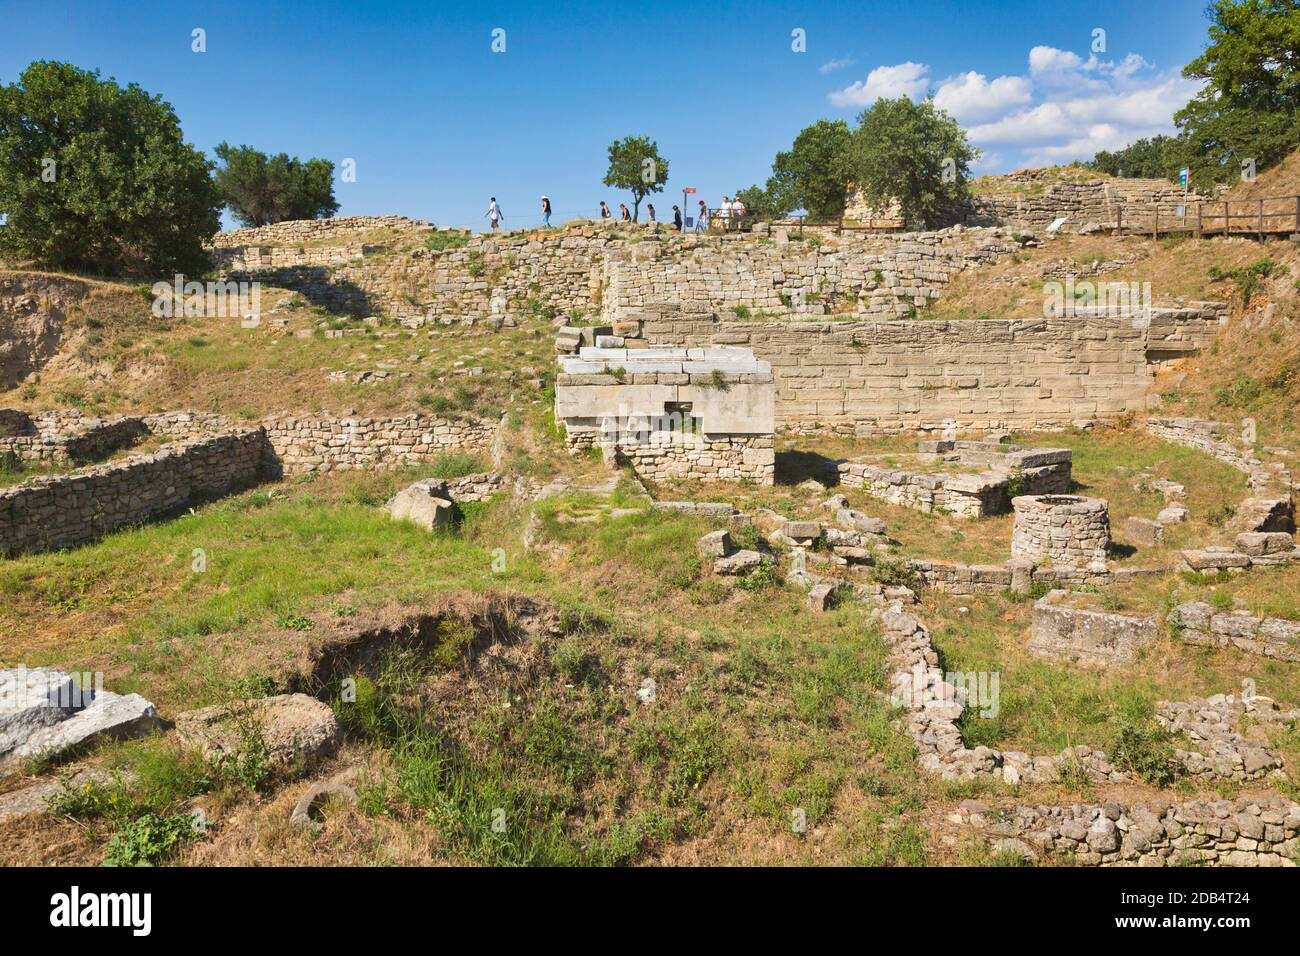 Troja, Provinz Çanakkale, Türkei. Troja ist ein UNESCO-Weltkulturerbe. Gruppe von Besuchern, die durch die Ruinen spazieren. Stockfoto